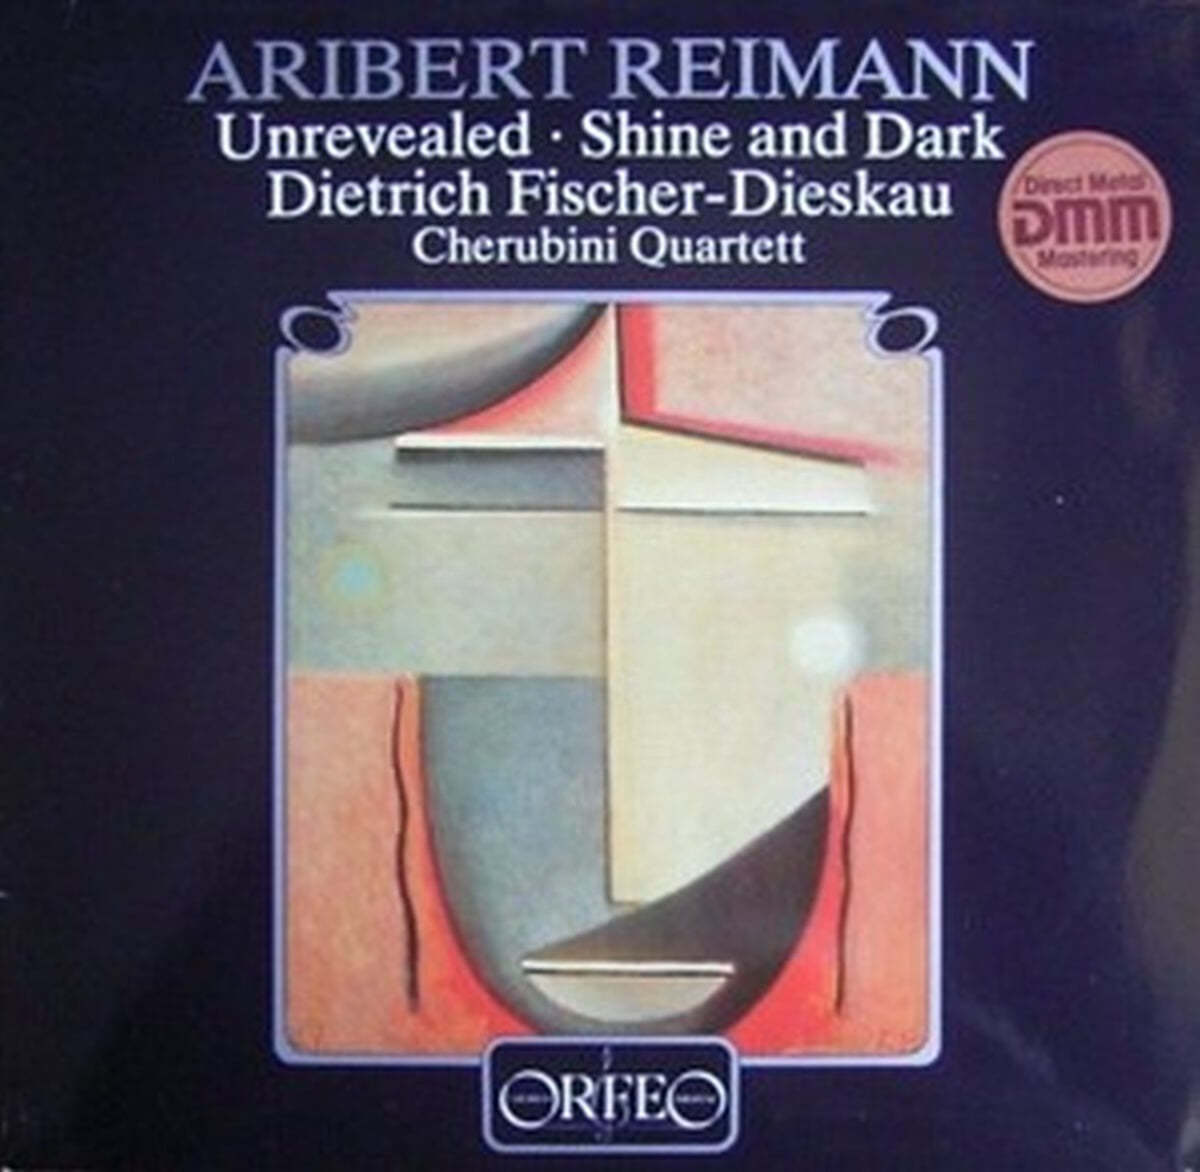 Dietrich Fischer-Dieskau 아리베르트 라이만: 가곡집 (Aribert Reimann: Unrevealed, Shine and Dark) [LP]